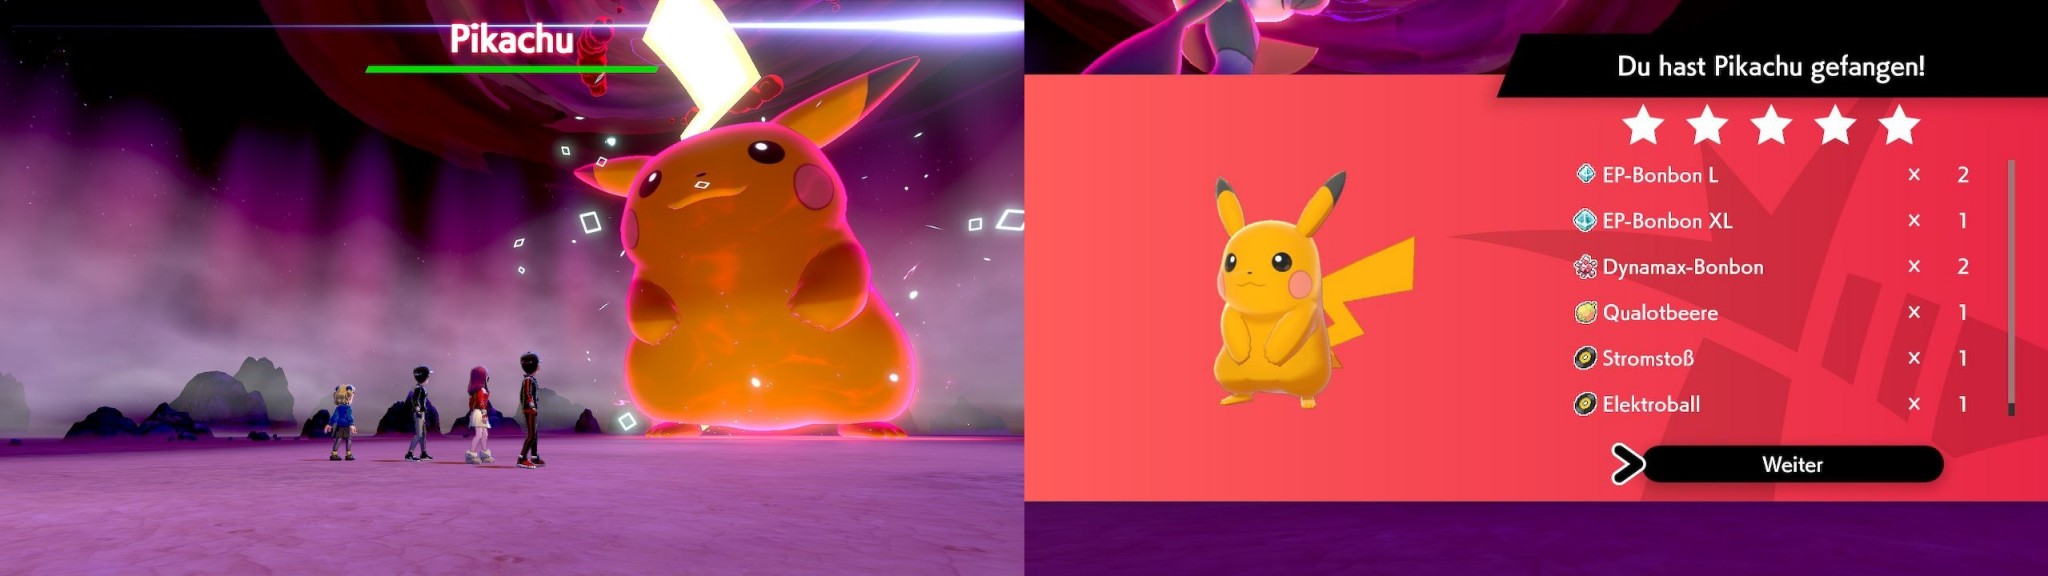 Raid-Shiny Pikachu